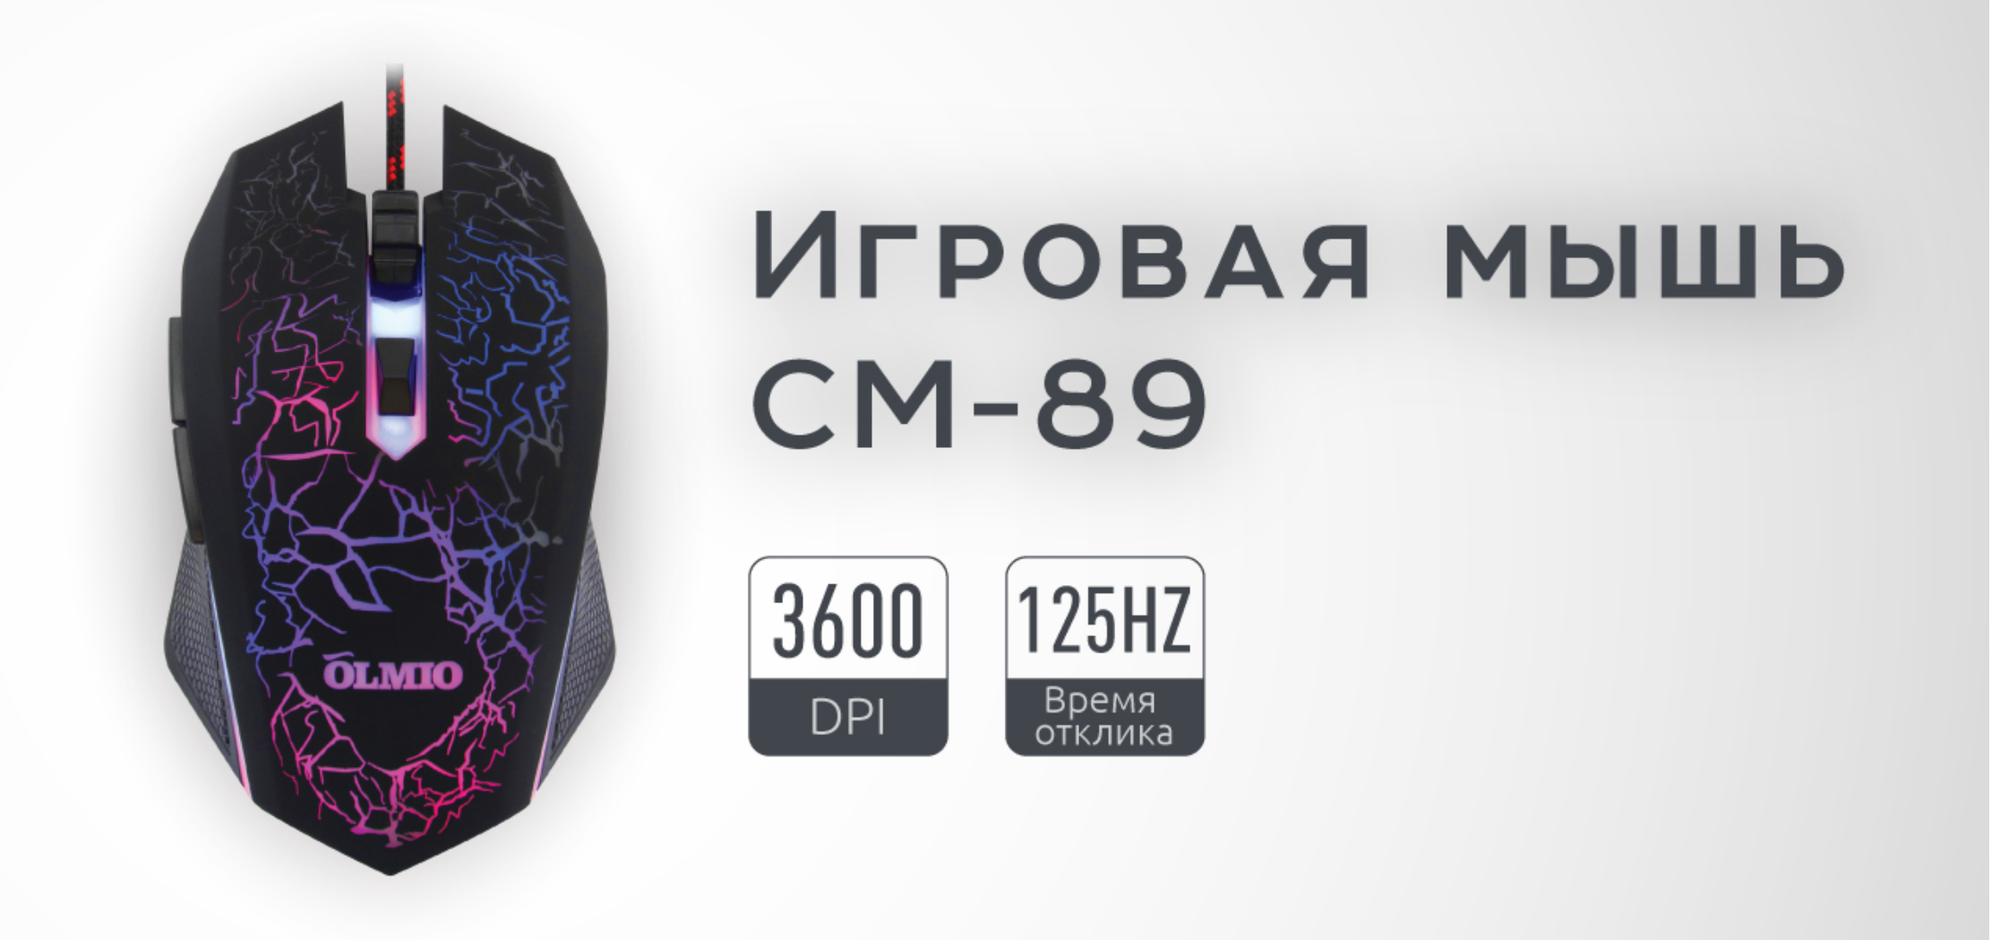 Компьютерная мышь Olmio CM-89 Gaming Series для персонального компьютера / RGB подсветка / 3600DPI / Черная / Оптическая / Проводная